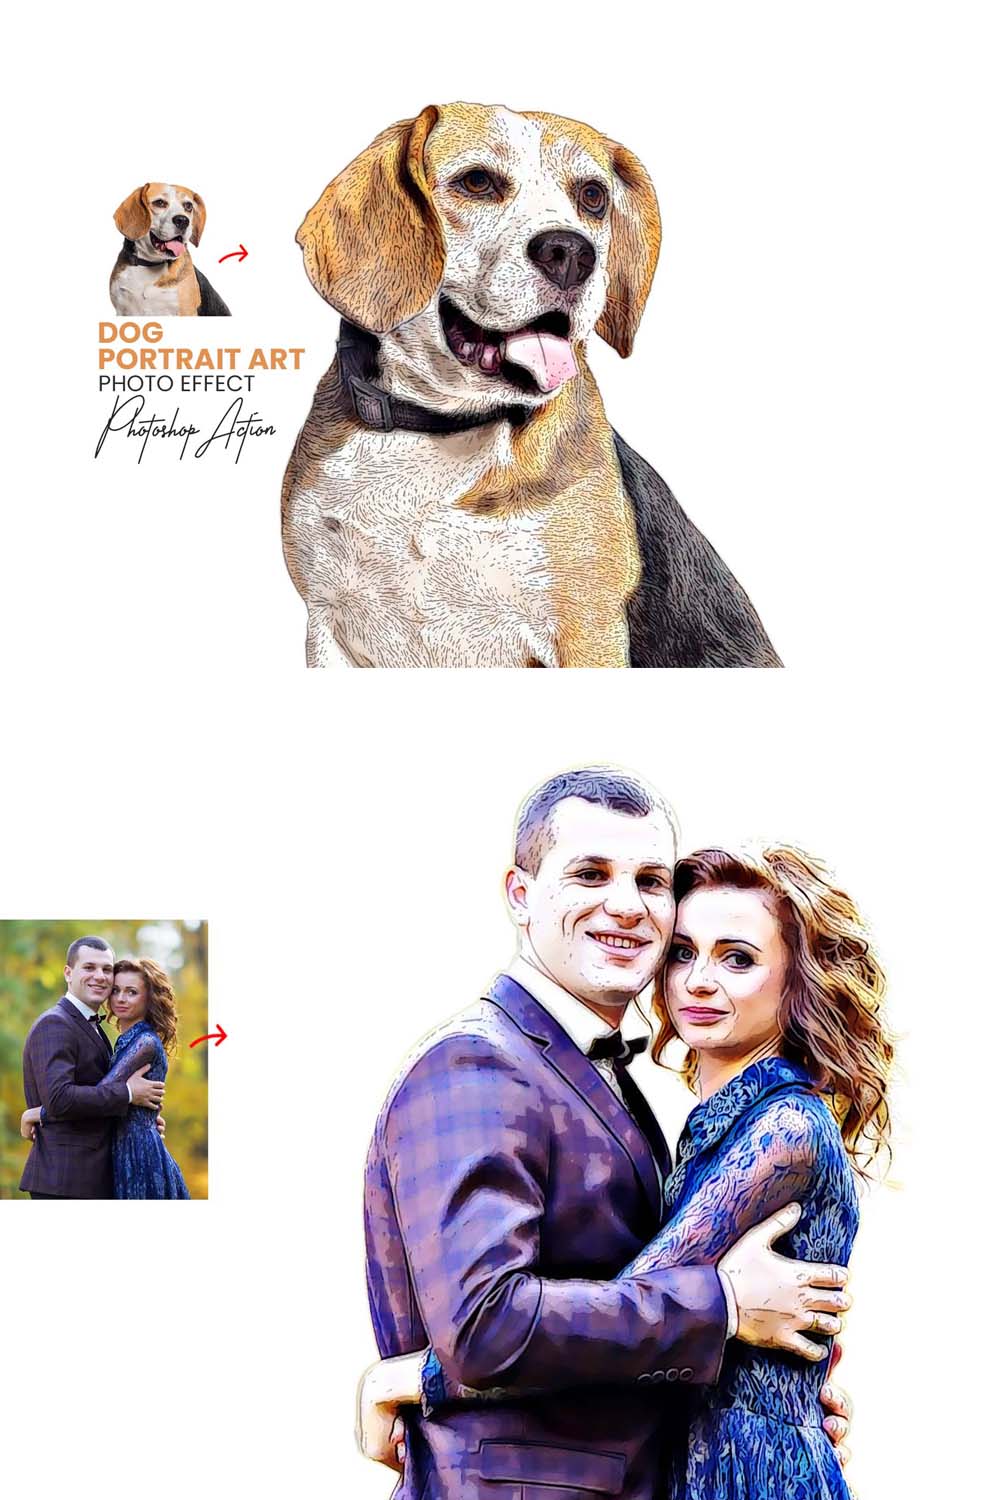 Dog Portrait Art Photoshop Action pinterest preview image.